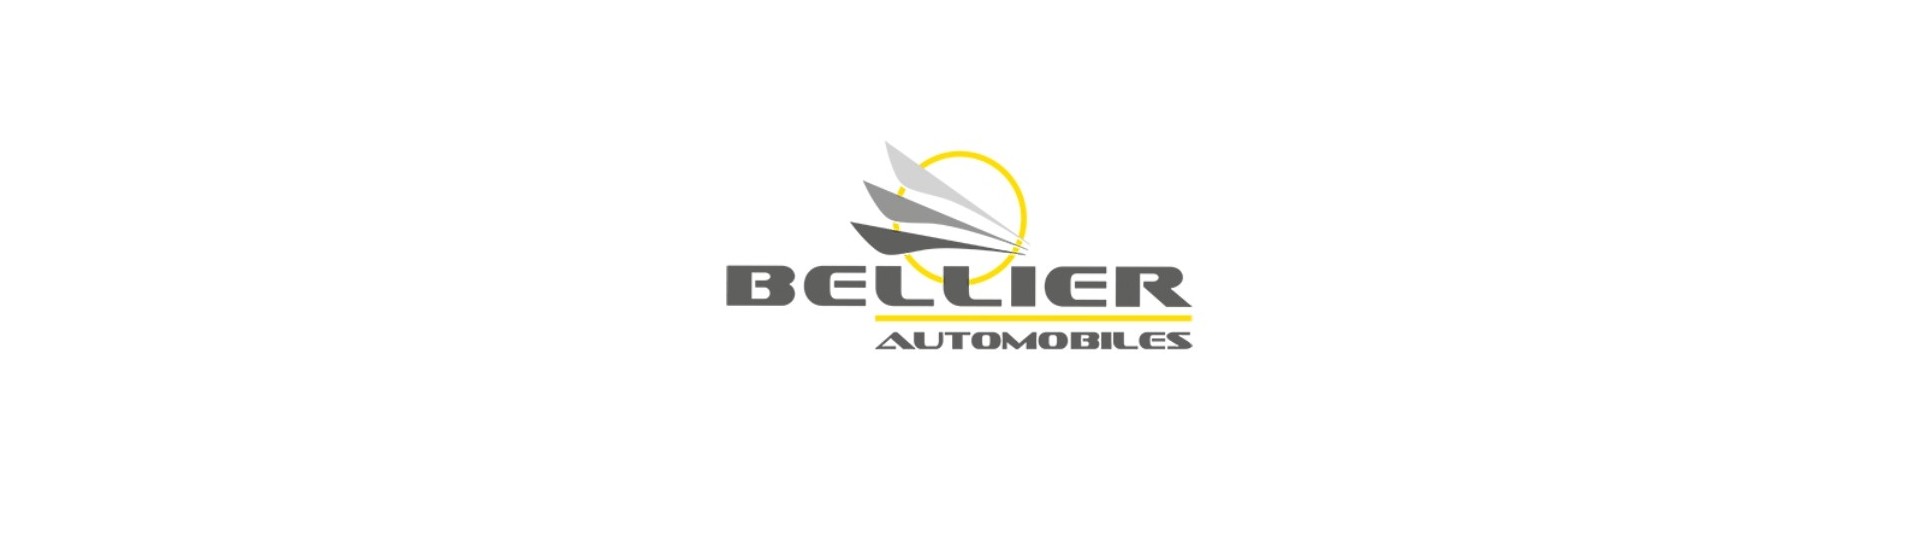 Quantidade de pára-brisa com o melhor preço para um carro sem licença Bellier